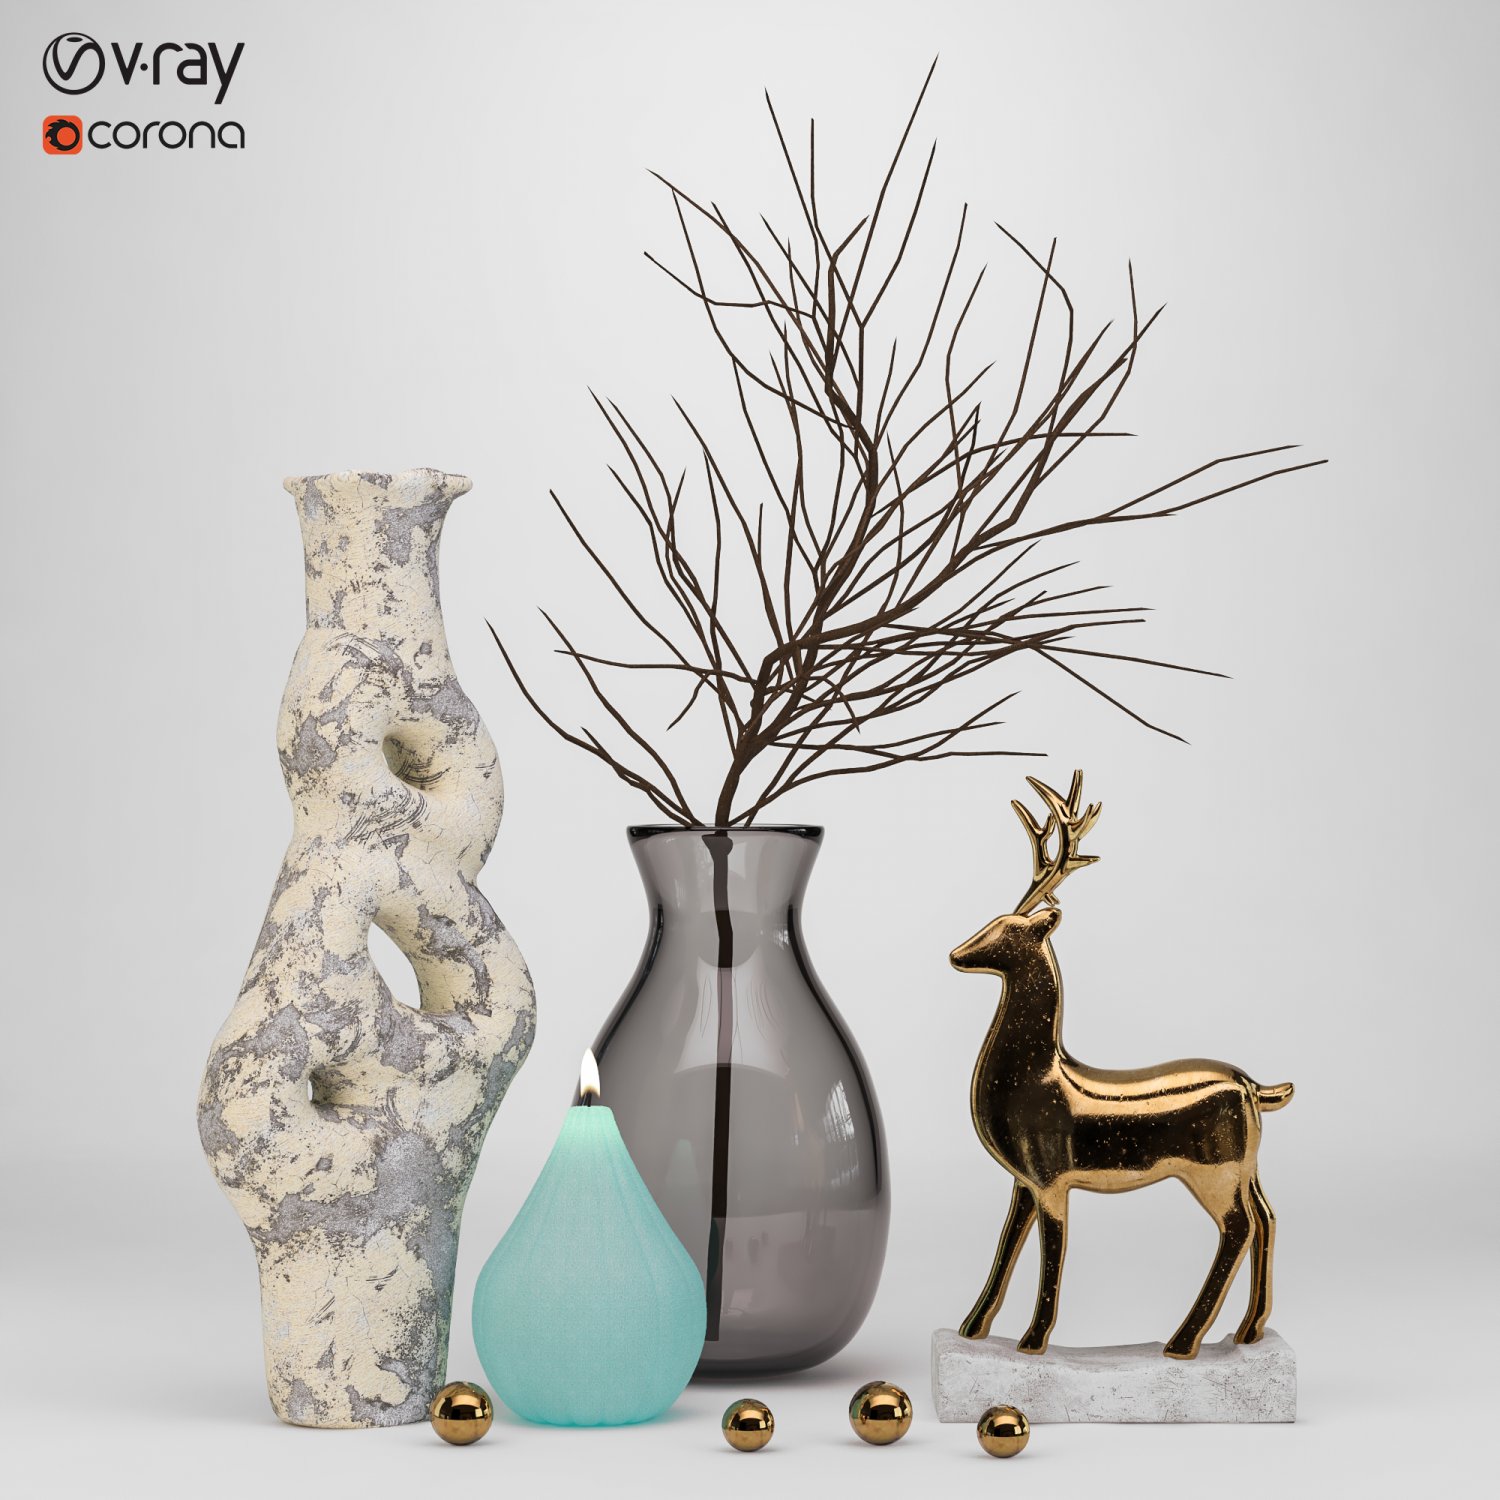 Dried Hydrangeas - 3D Model for VRay, Corona